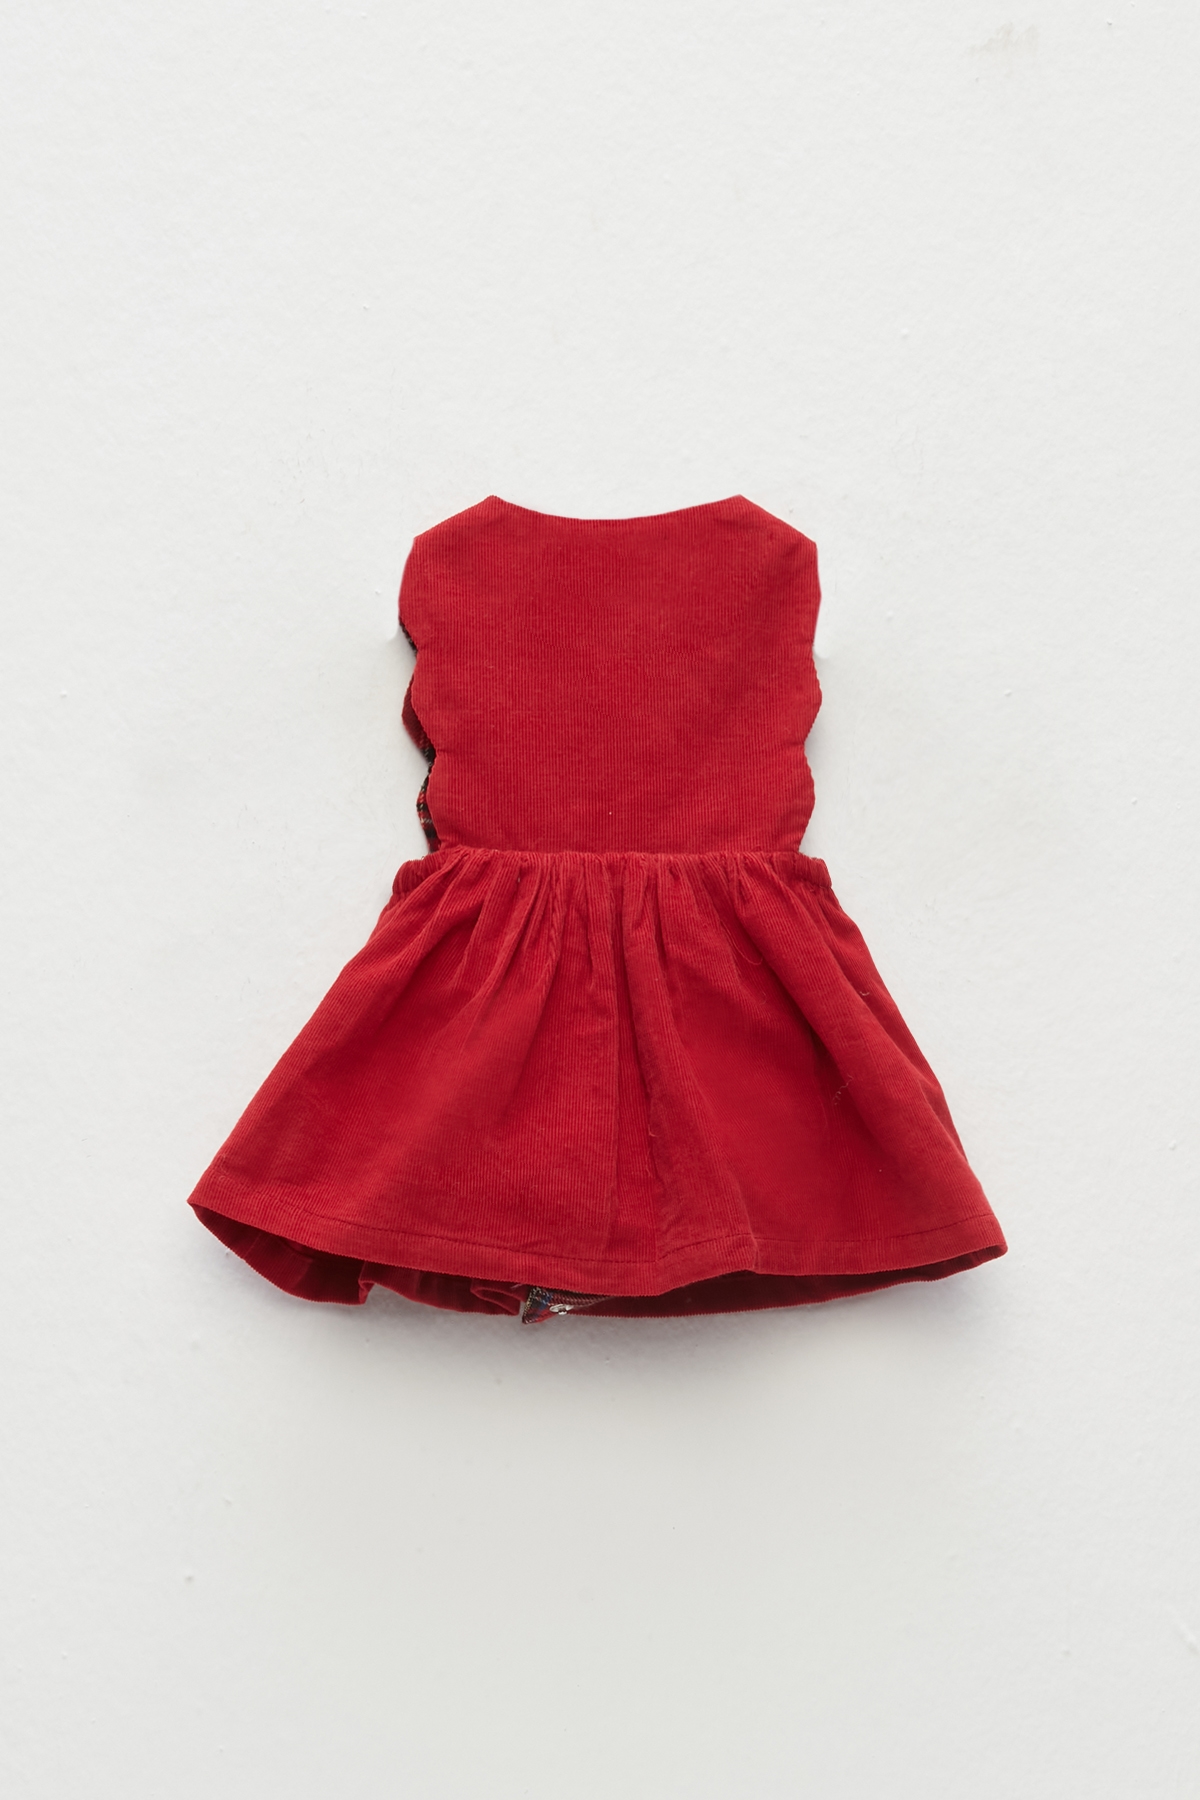 Kız Bebek Kırmızı Elbise Takım